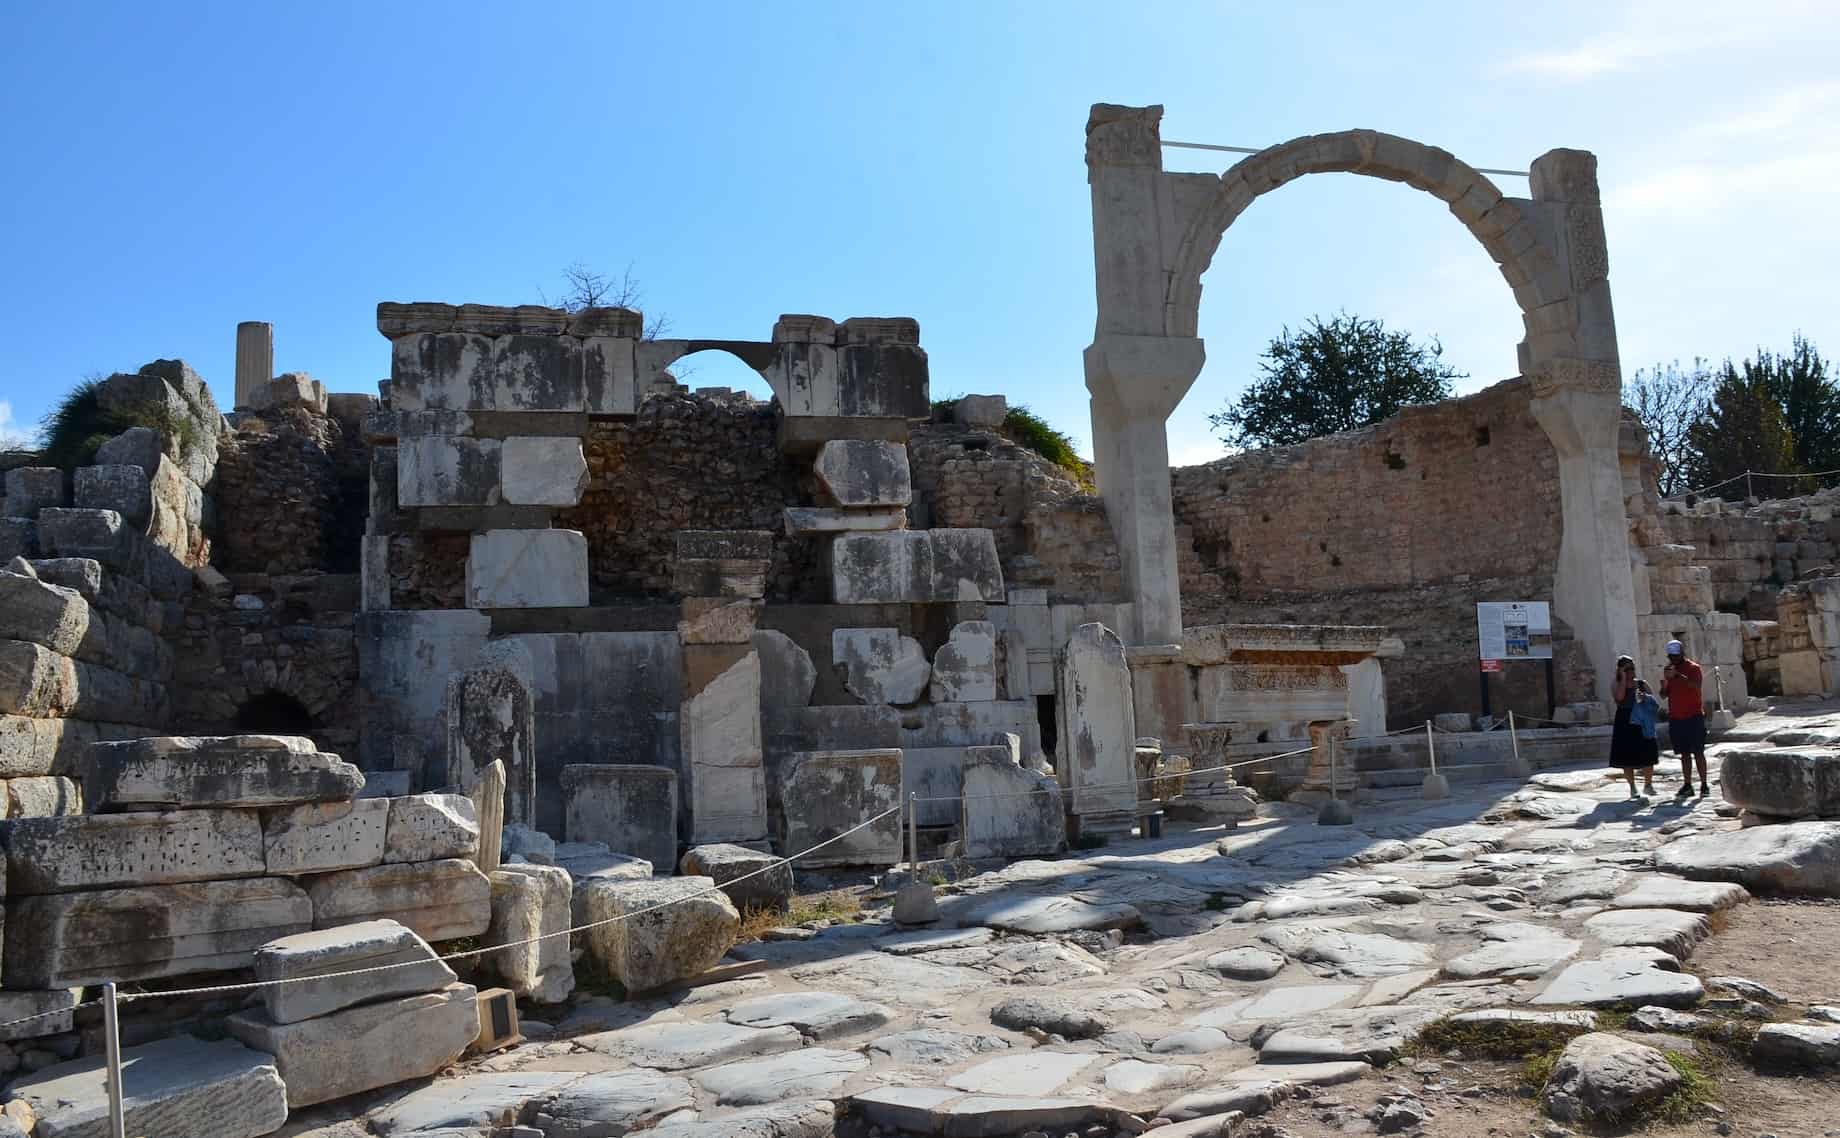 Pollio Monument on Domitian Square in Ephesus